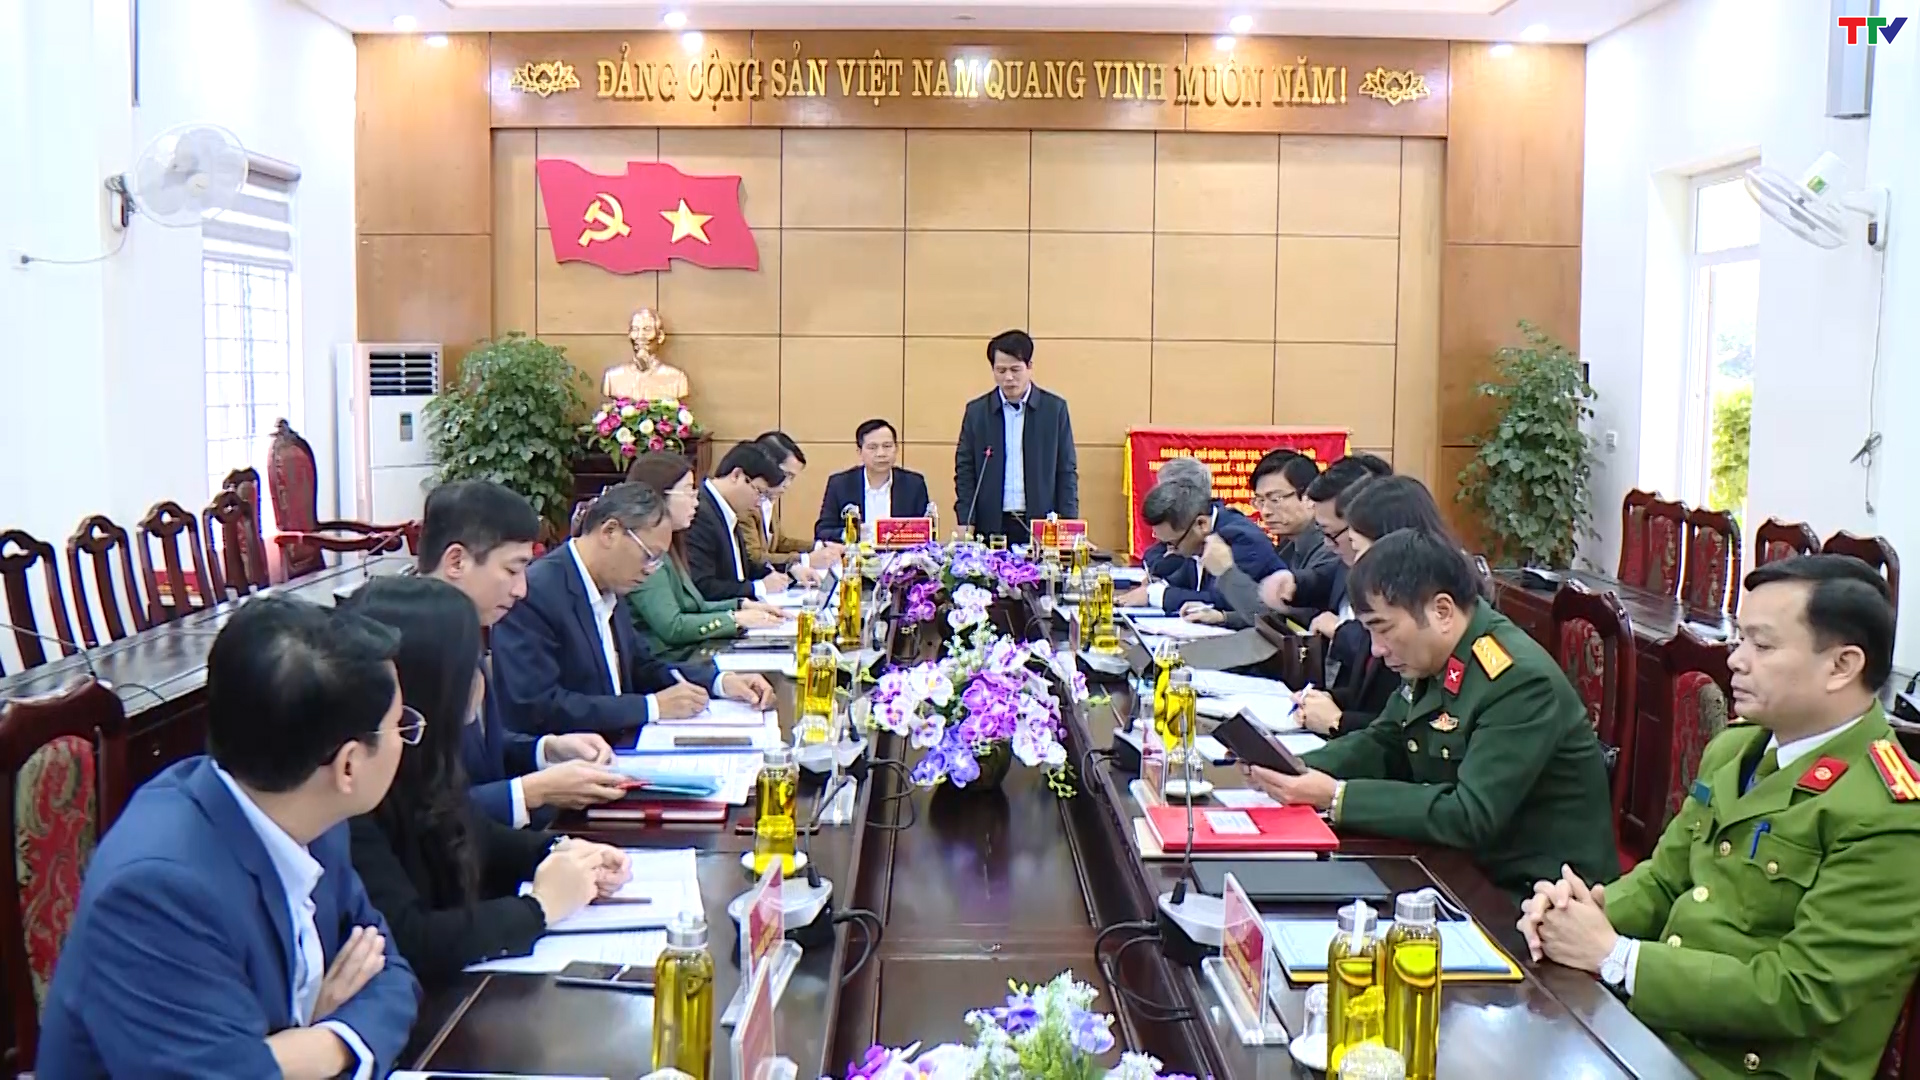 Đồng chí Trưởng Ban Tuyên giáo Tỉnh ủy Đào Xuân Yên thăm, kiểm tra tình hình sản xuất và đời sống của Nhân dân huyện Lang Chánh - Ảnh 3.